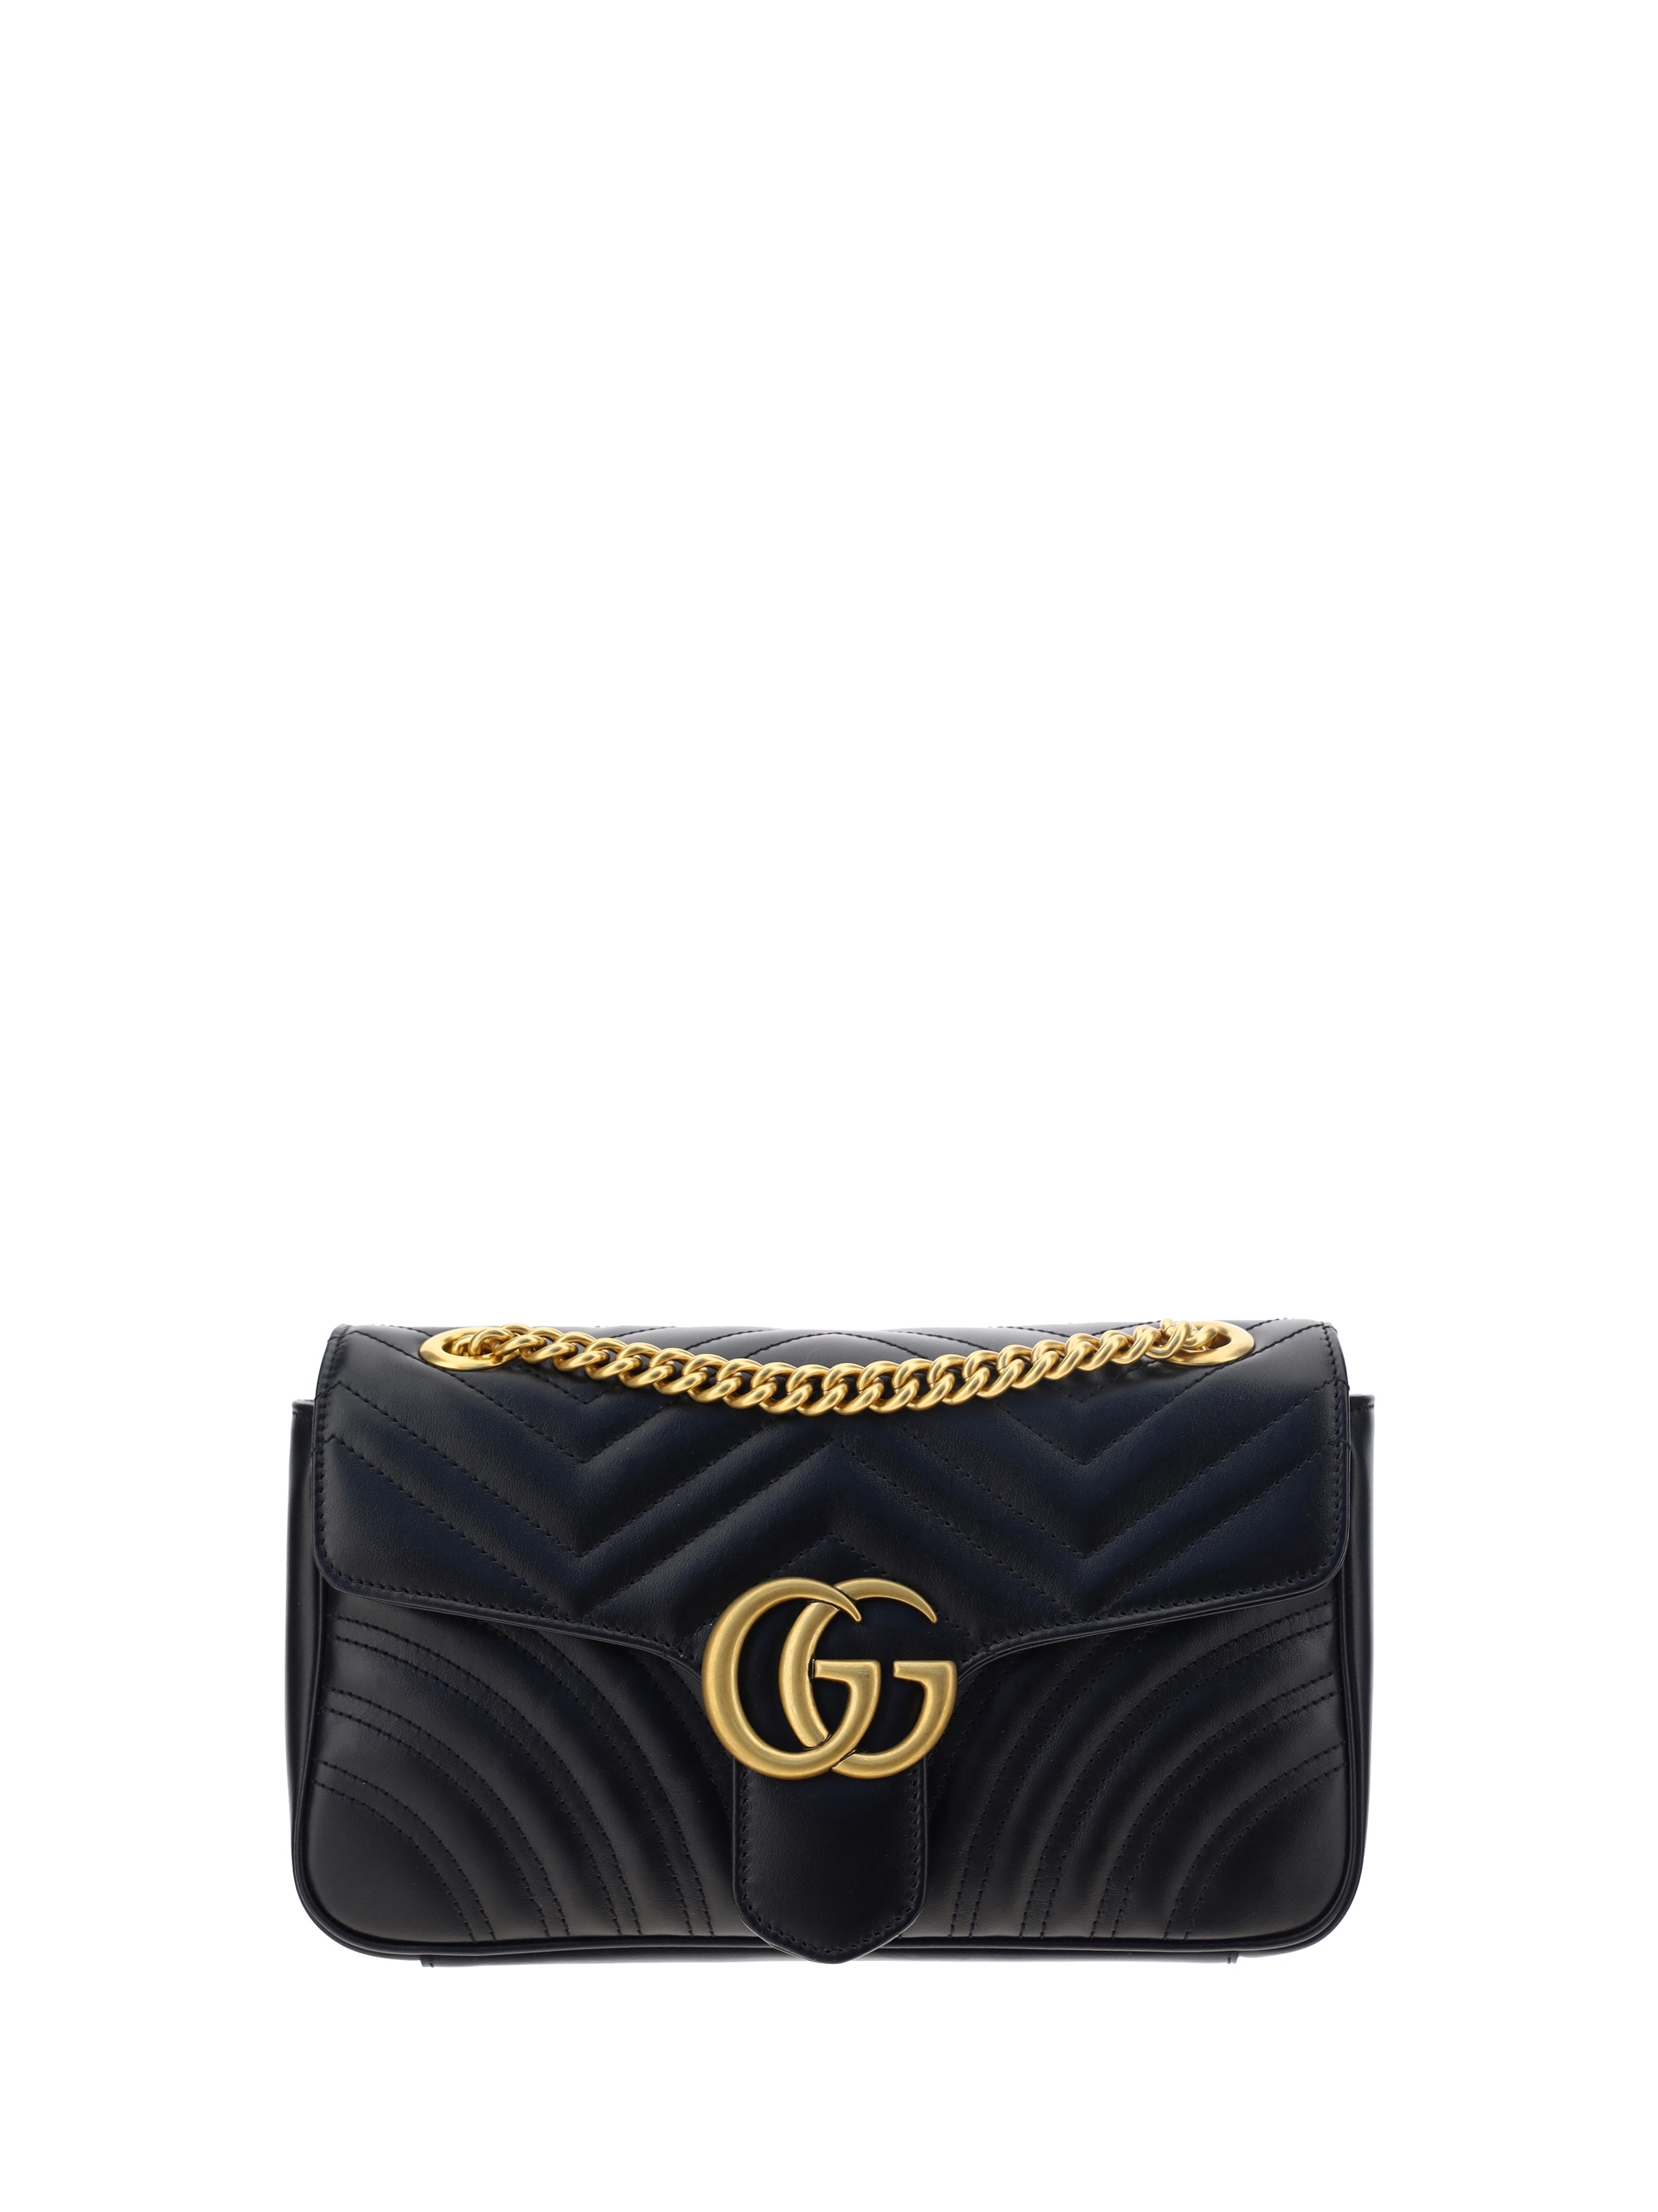 Gucci Gg Marmont 2.0 Shoulder Bag In Black